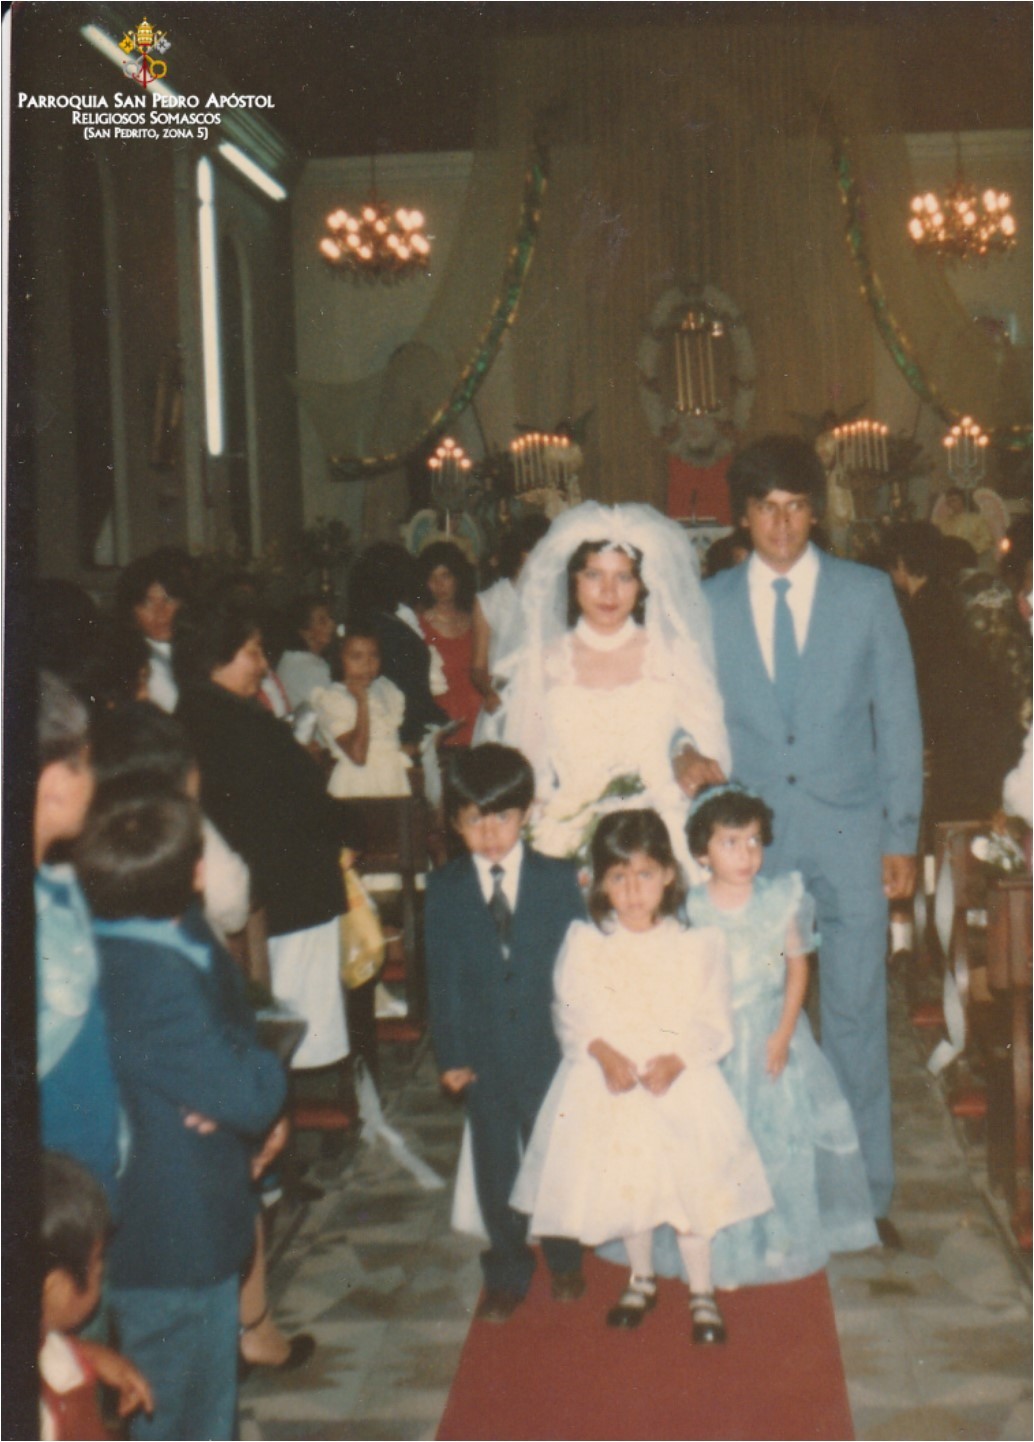 Fotografía de una boda realizada en la Parroquia San Pedro Apóstol